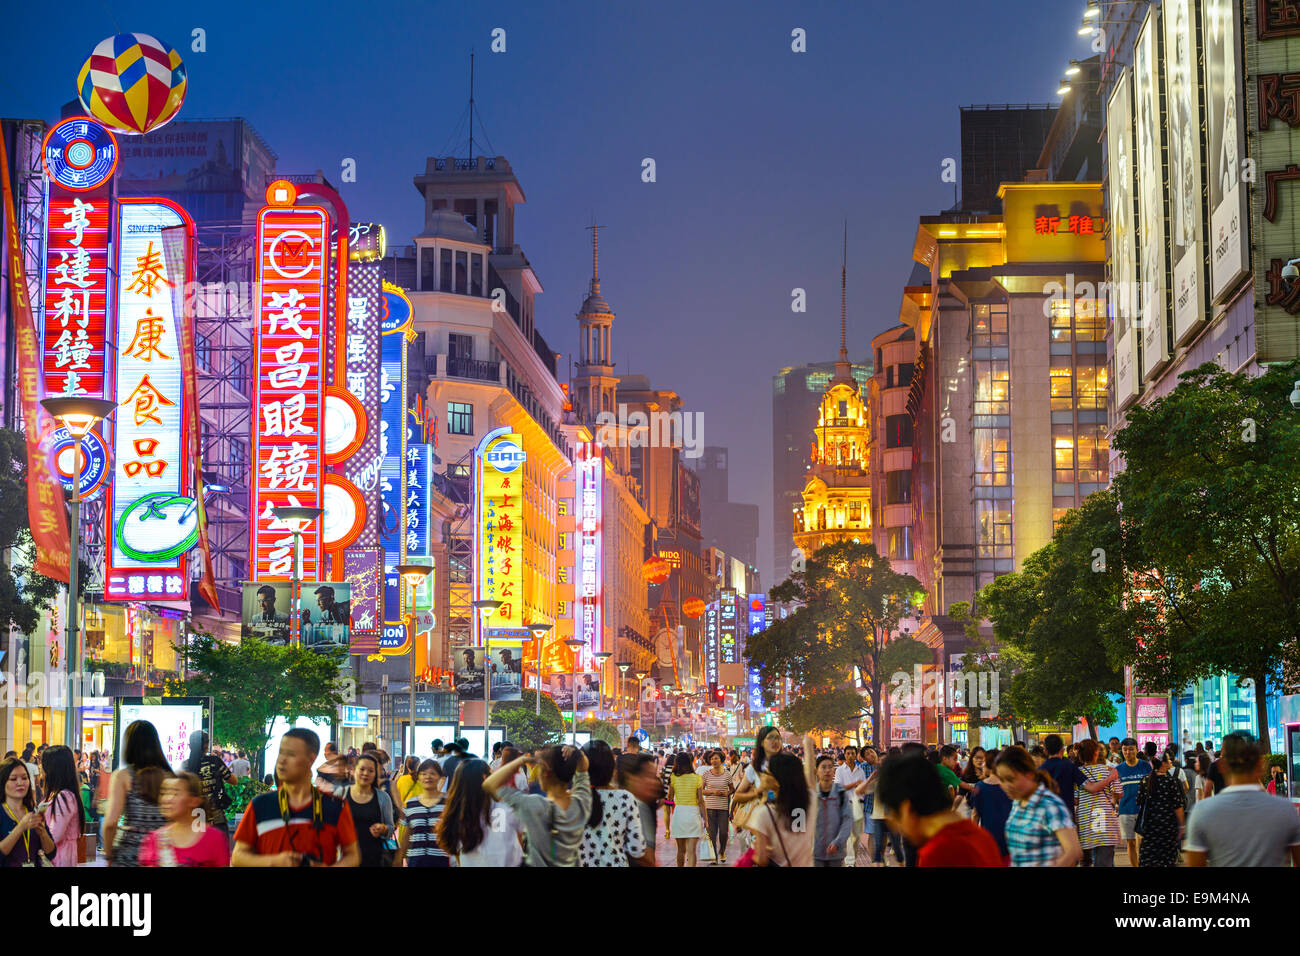 SHANGHAI, Cina - 16 giugno 2014: insegne al neon accesa su Nanjing Road. La street è la strada principale dello shopping della citta'. Foto Stock